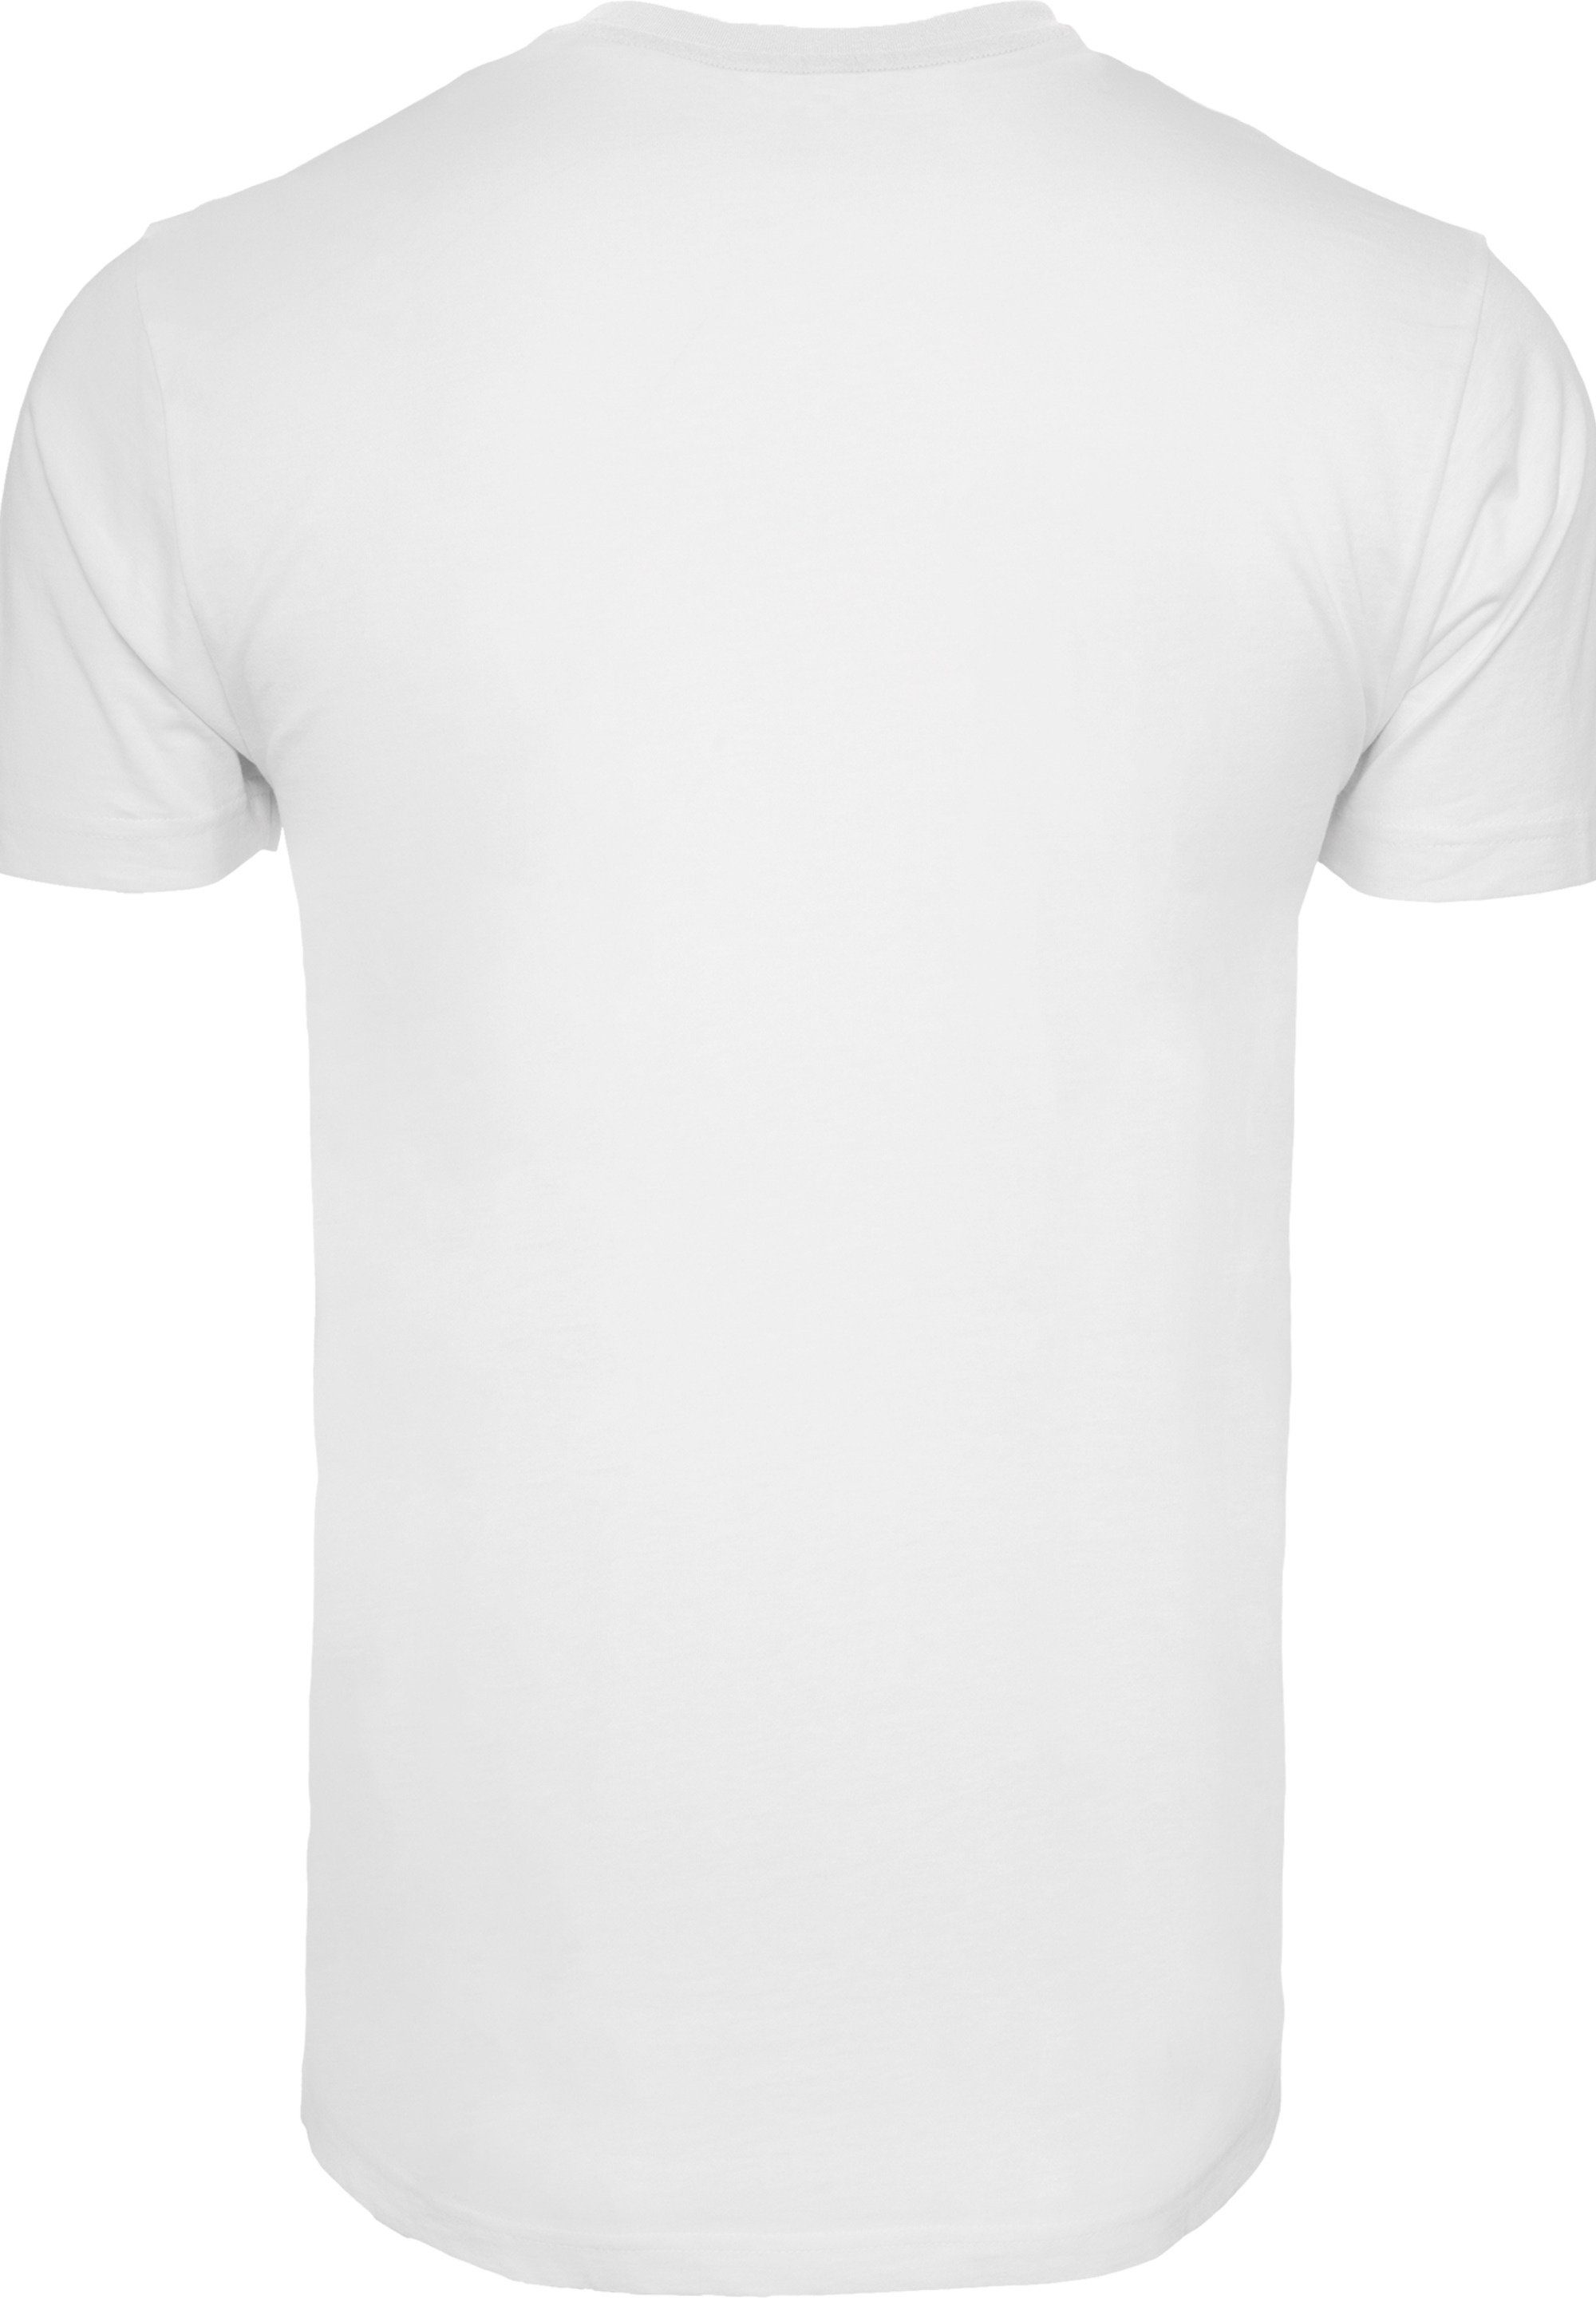 F4NT4STIC T-Shirt Disney Bambi weiß Merch,Regular-Fit,Basic,Bedruckt Meadow Herren,Premium